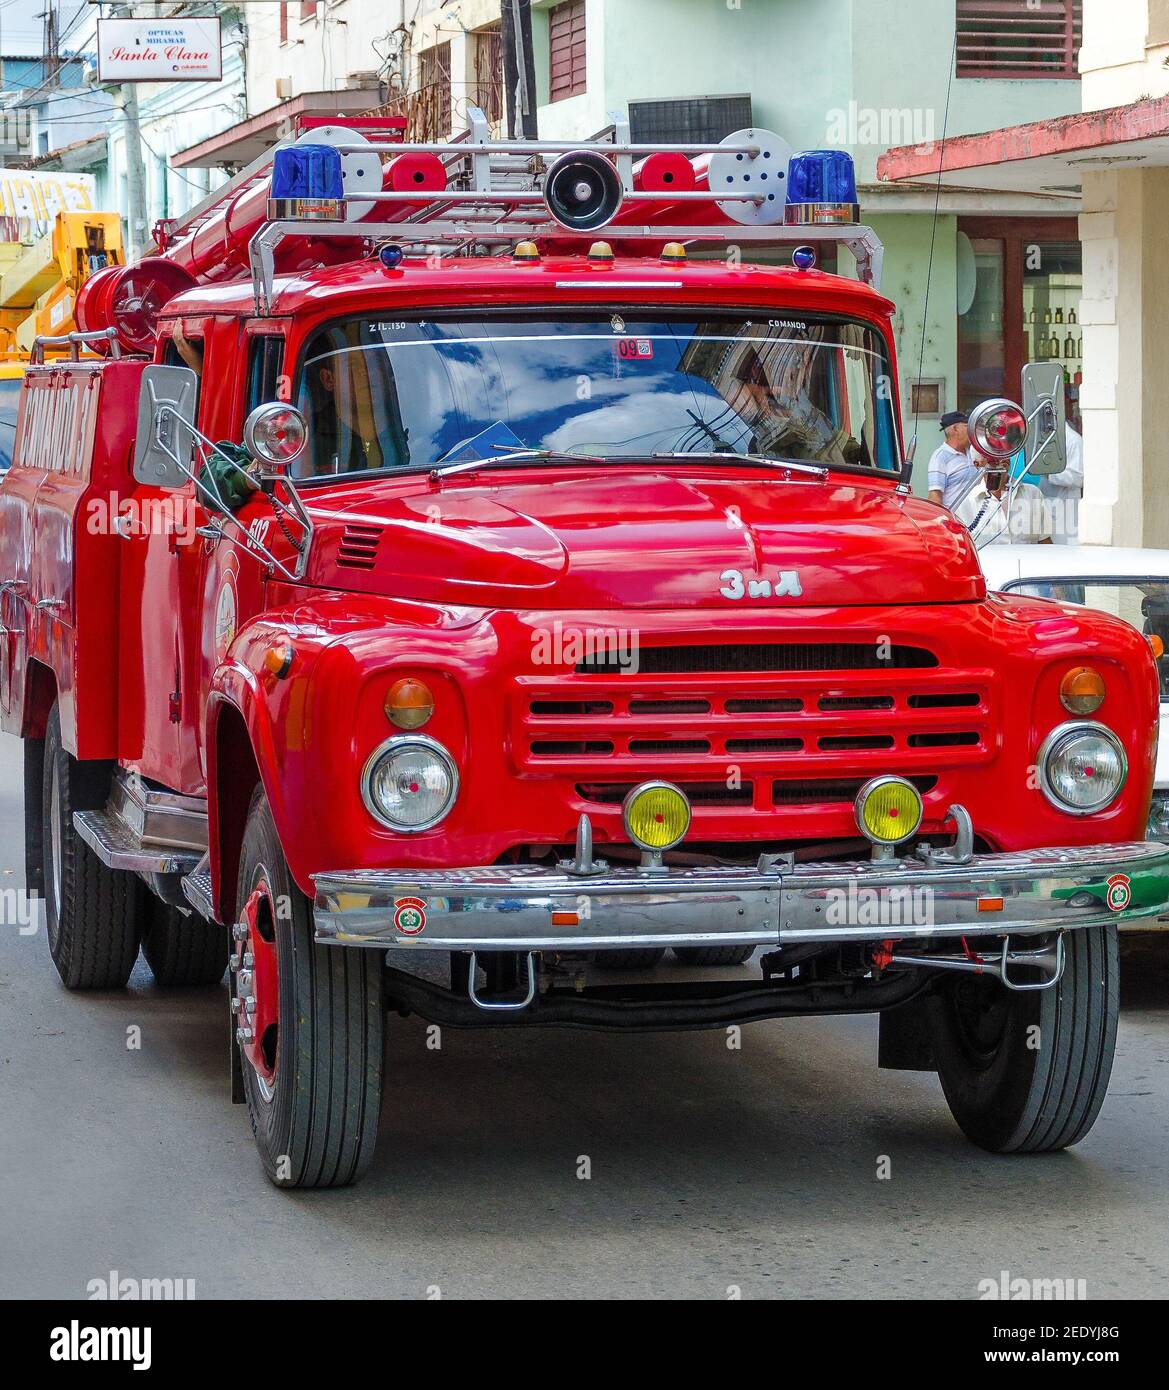 Mezzi di trasporto a Cuba: Autocarro russo che circola, il governo cubano mantiene e utilizza vecchi autocarri russi per vigili del fuoco. Foto Stock